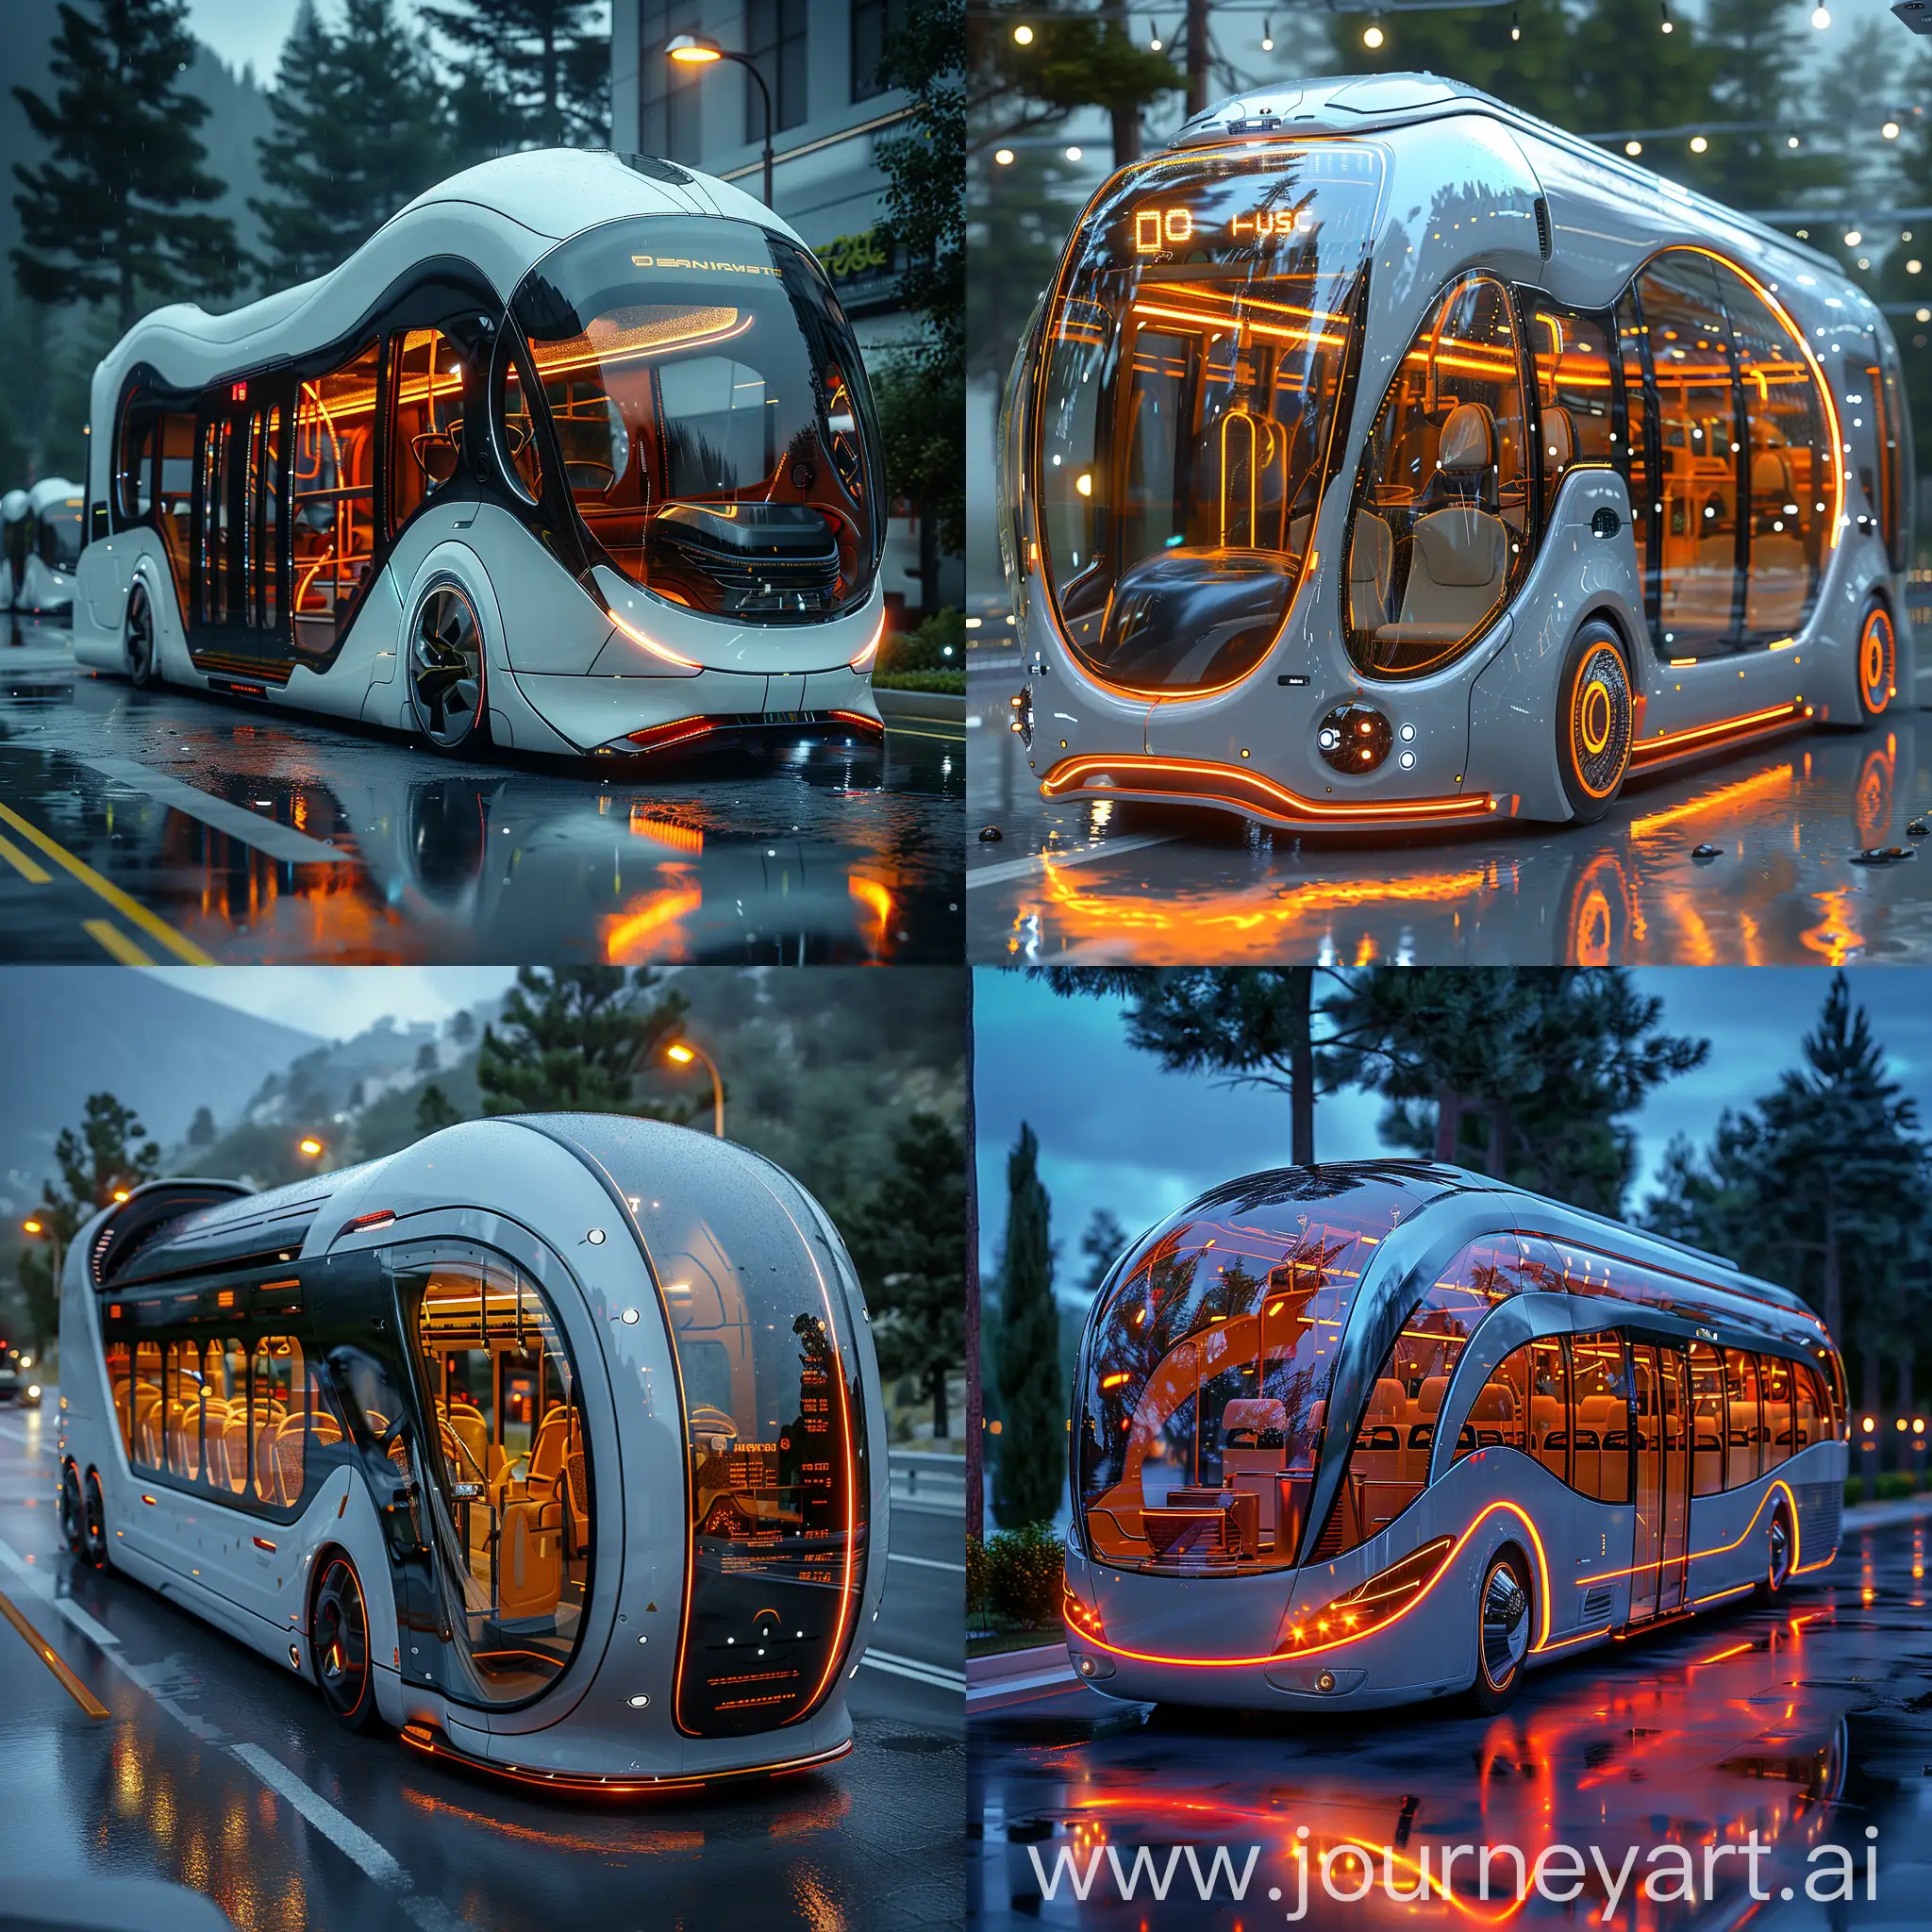 Futuristic-UltraModern-Bus-in-an-Advanced-Civilization